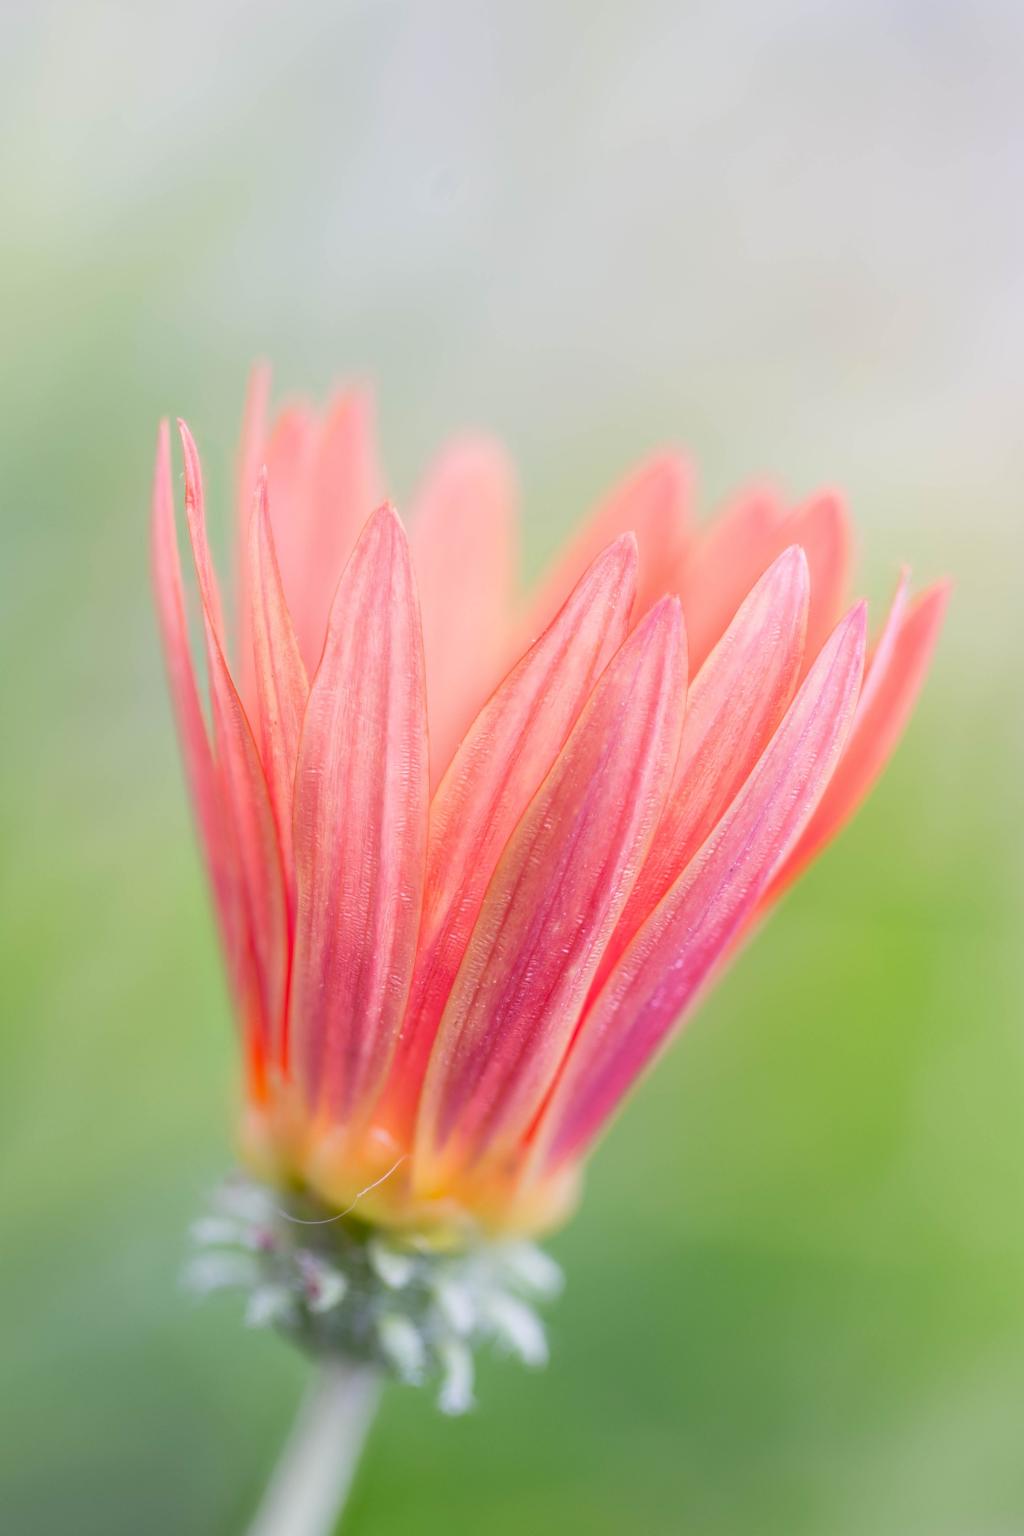 微粉摄影的桃红色雏菊高清壁纸